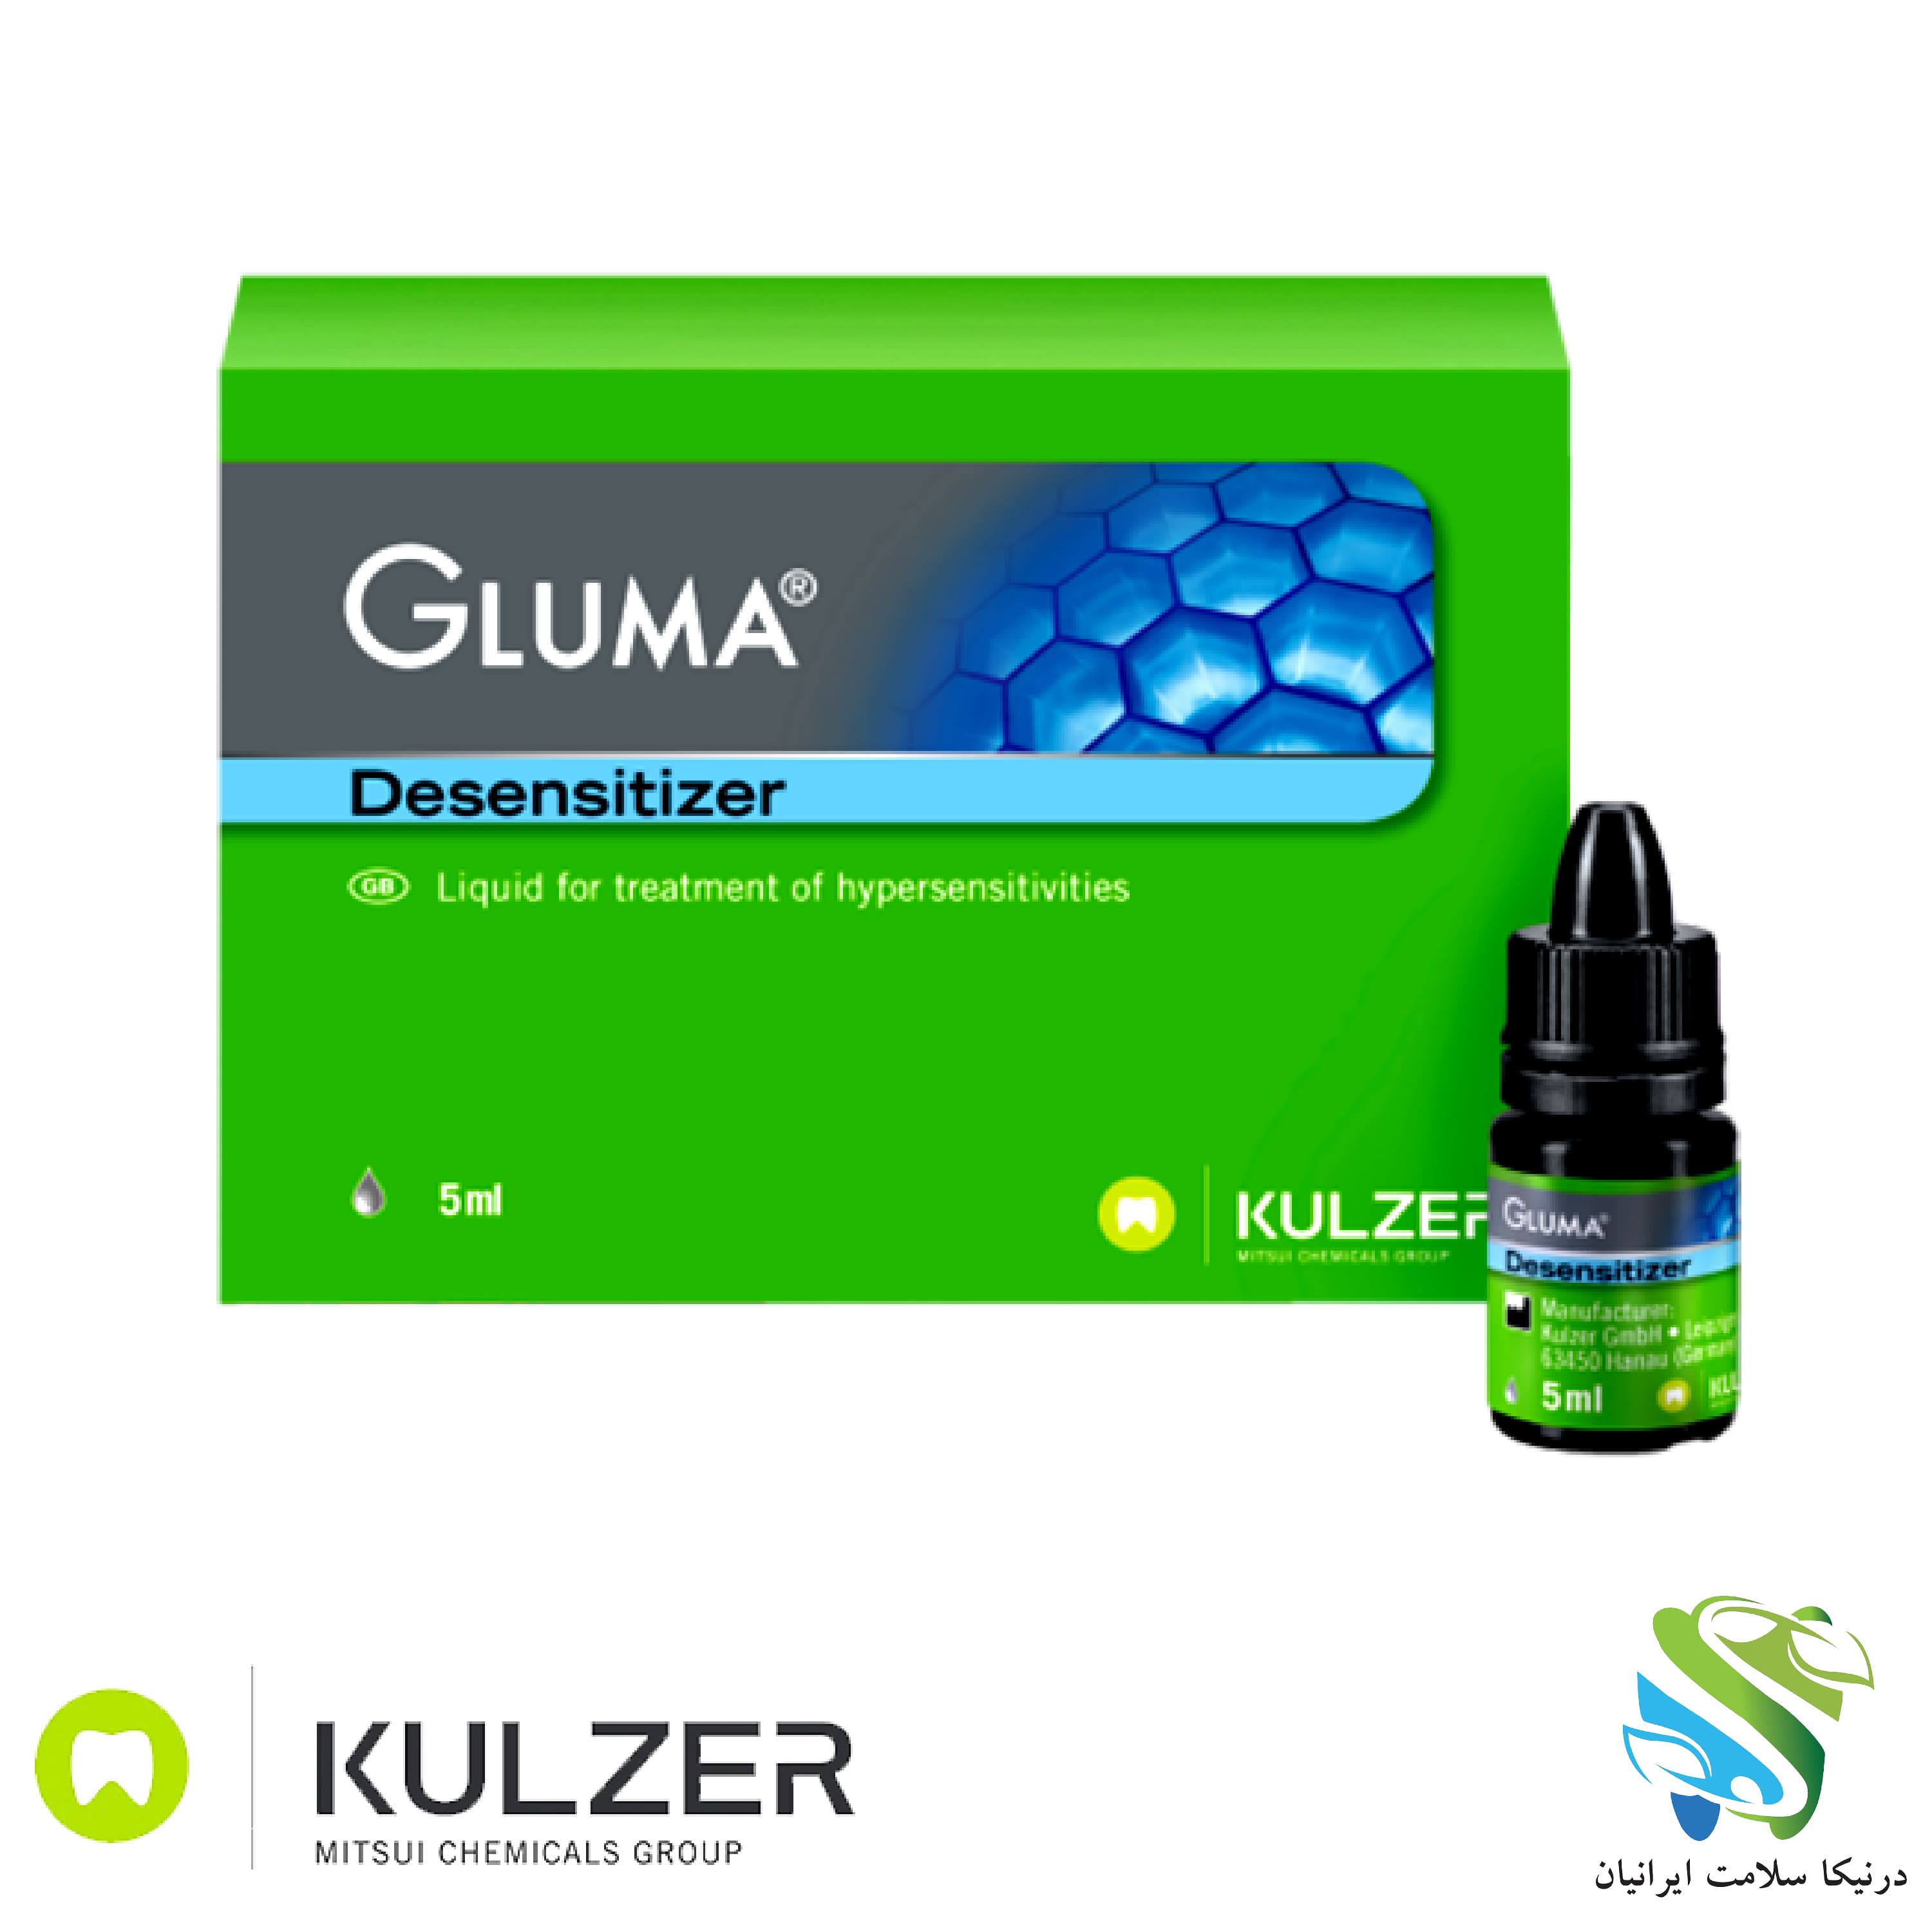 مایع ضد حساسیت GLUMA DESENSITIZER kulzer